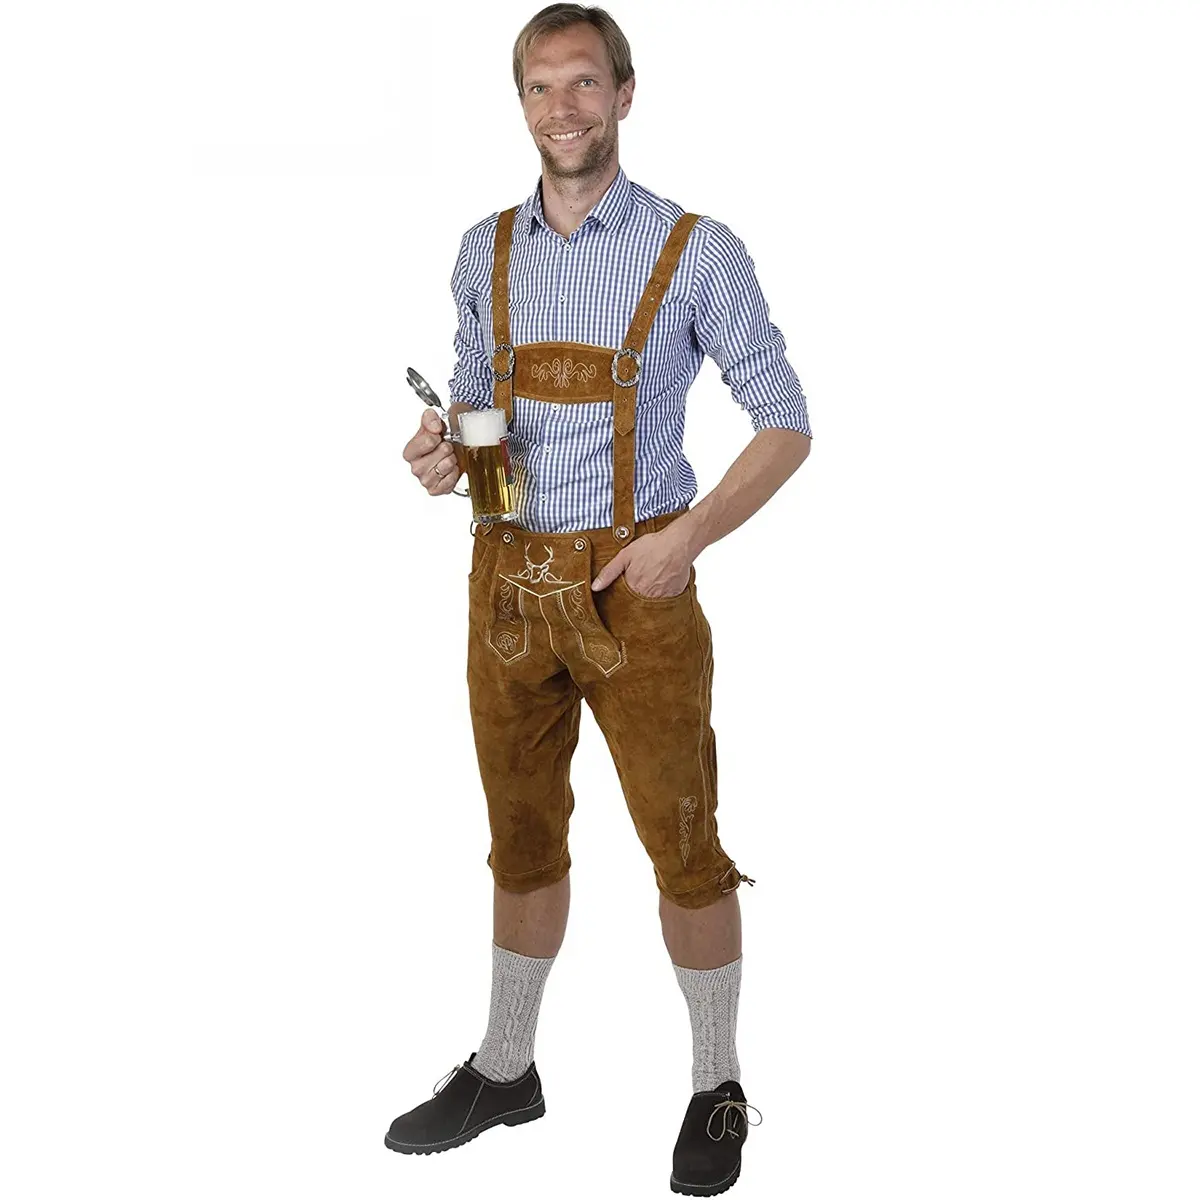 Traditionelle Lederhosen Riemen Knieband Lederhose traditionelle Hose verwendet Look beige Bayerische Lederhosen Oktoberfest Shorts